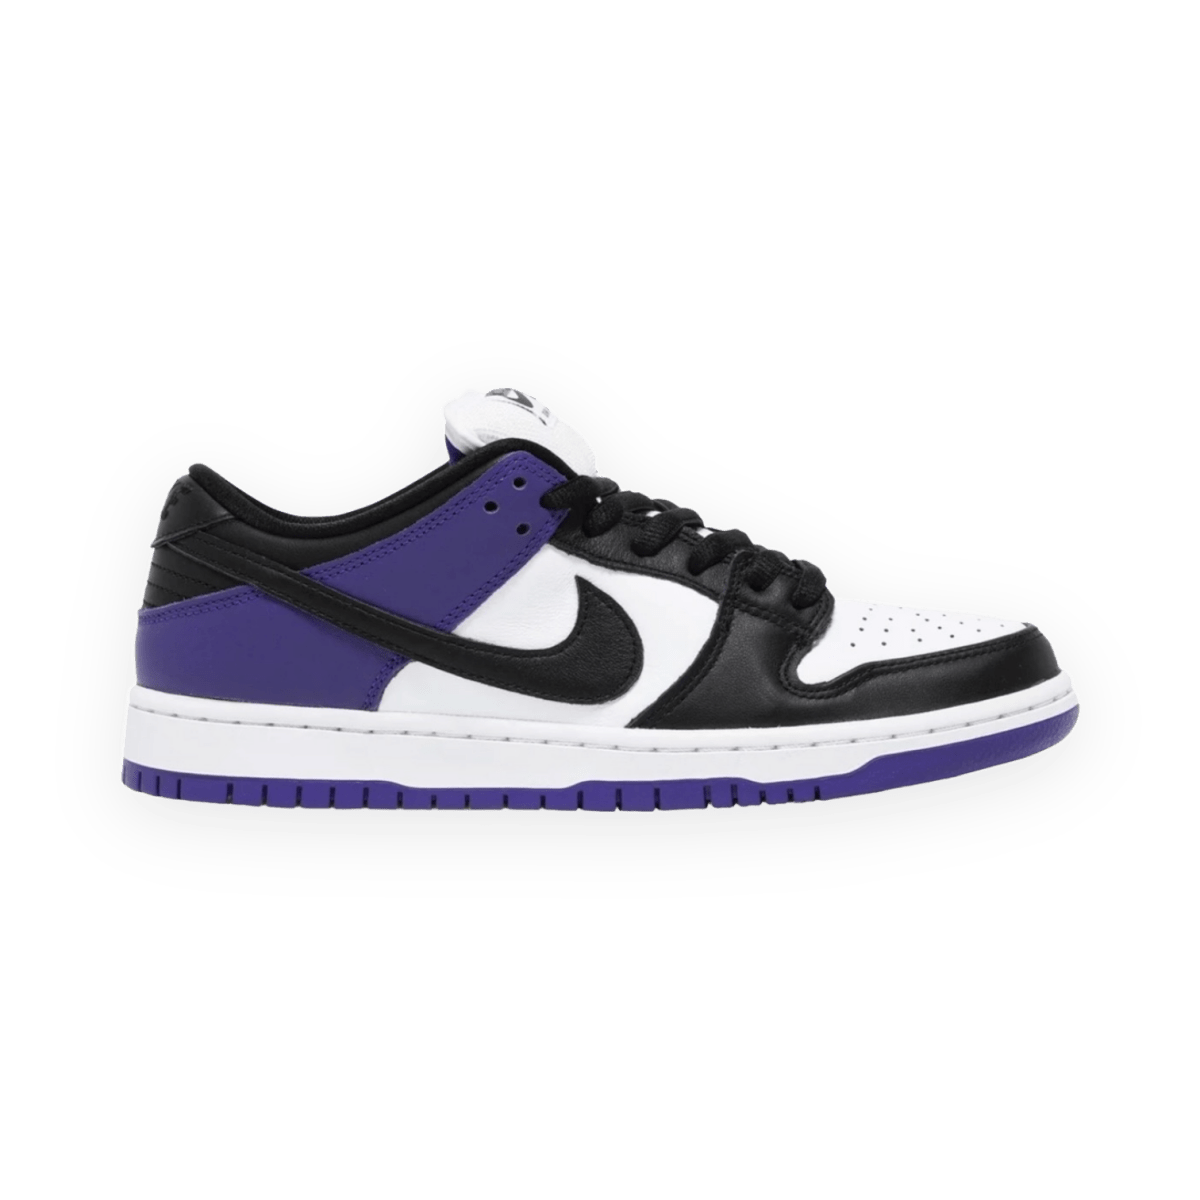 Dunk Low SB 'Court Purple' - Gently Enjoyed (Used) - Men 11 - Low Sneaker - Jawns on Fire Sneakers & Streetwear